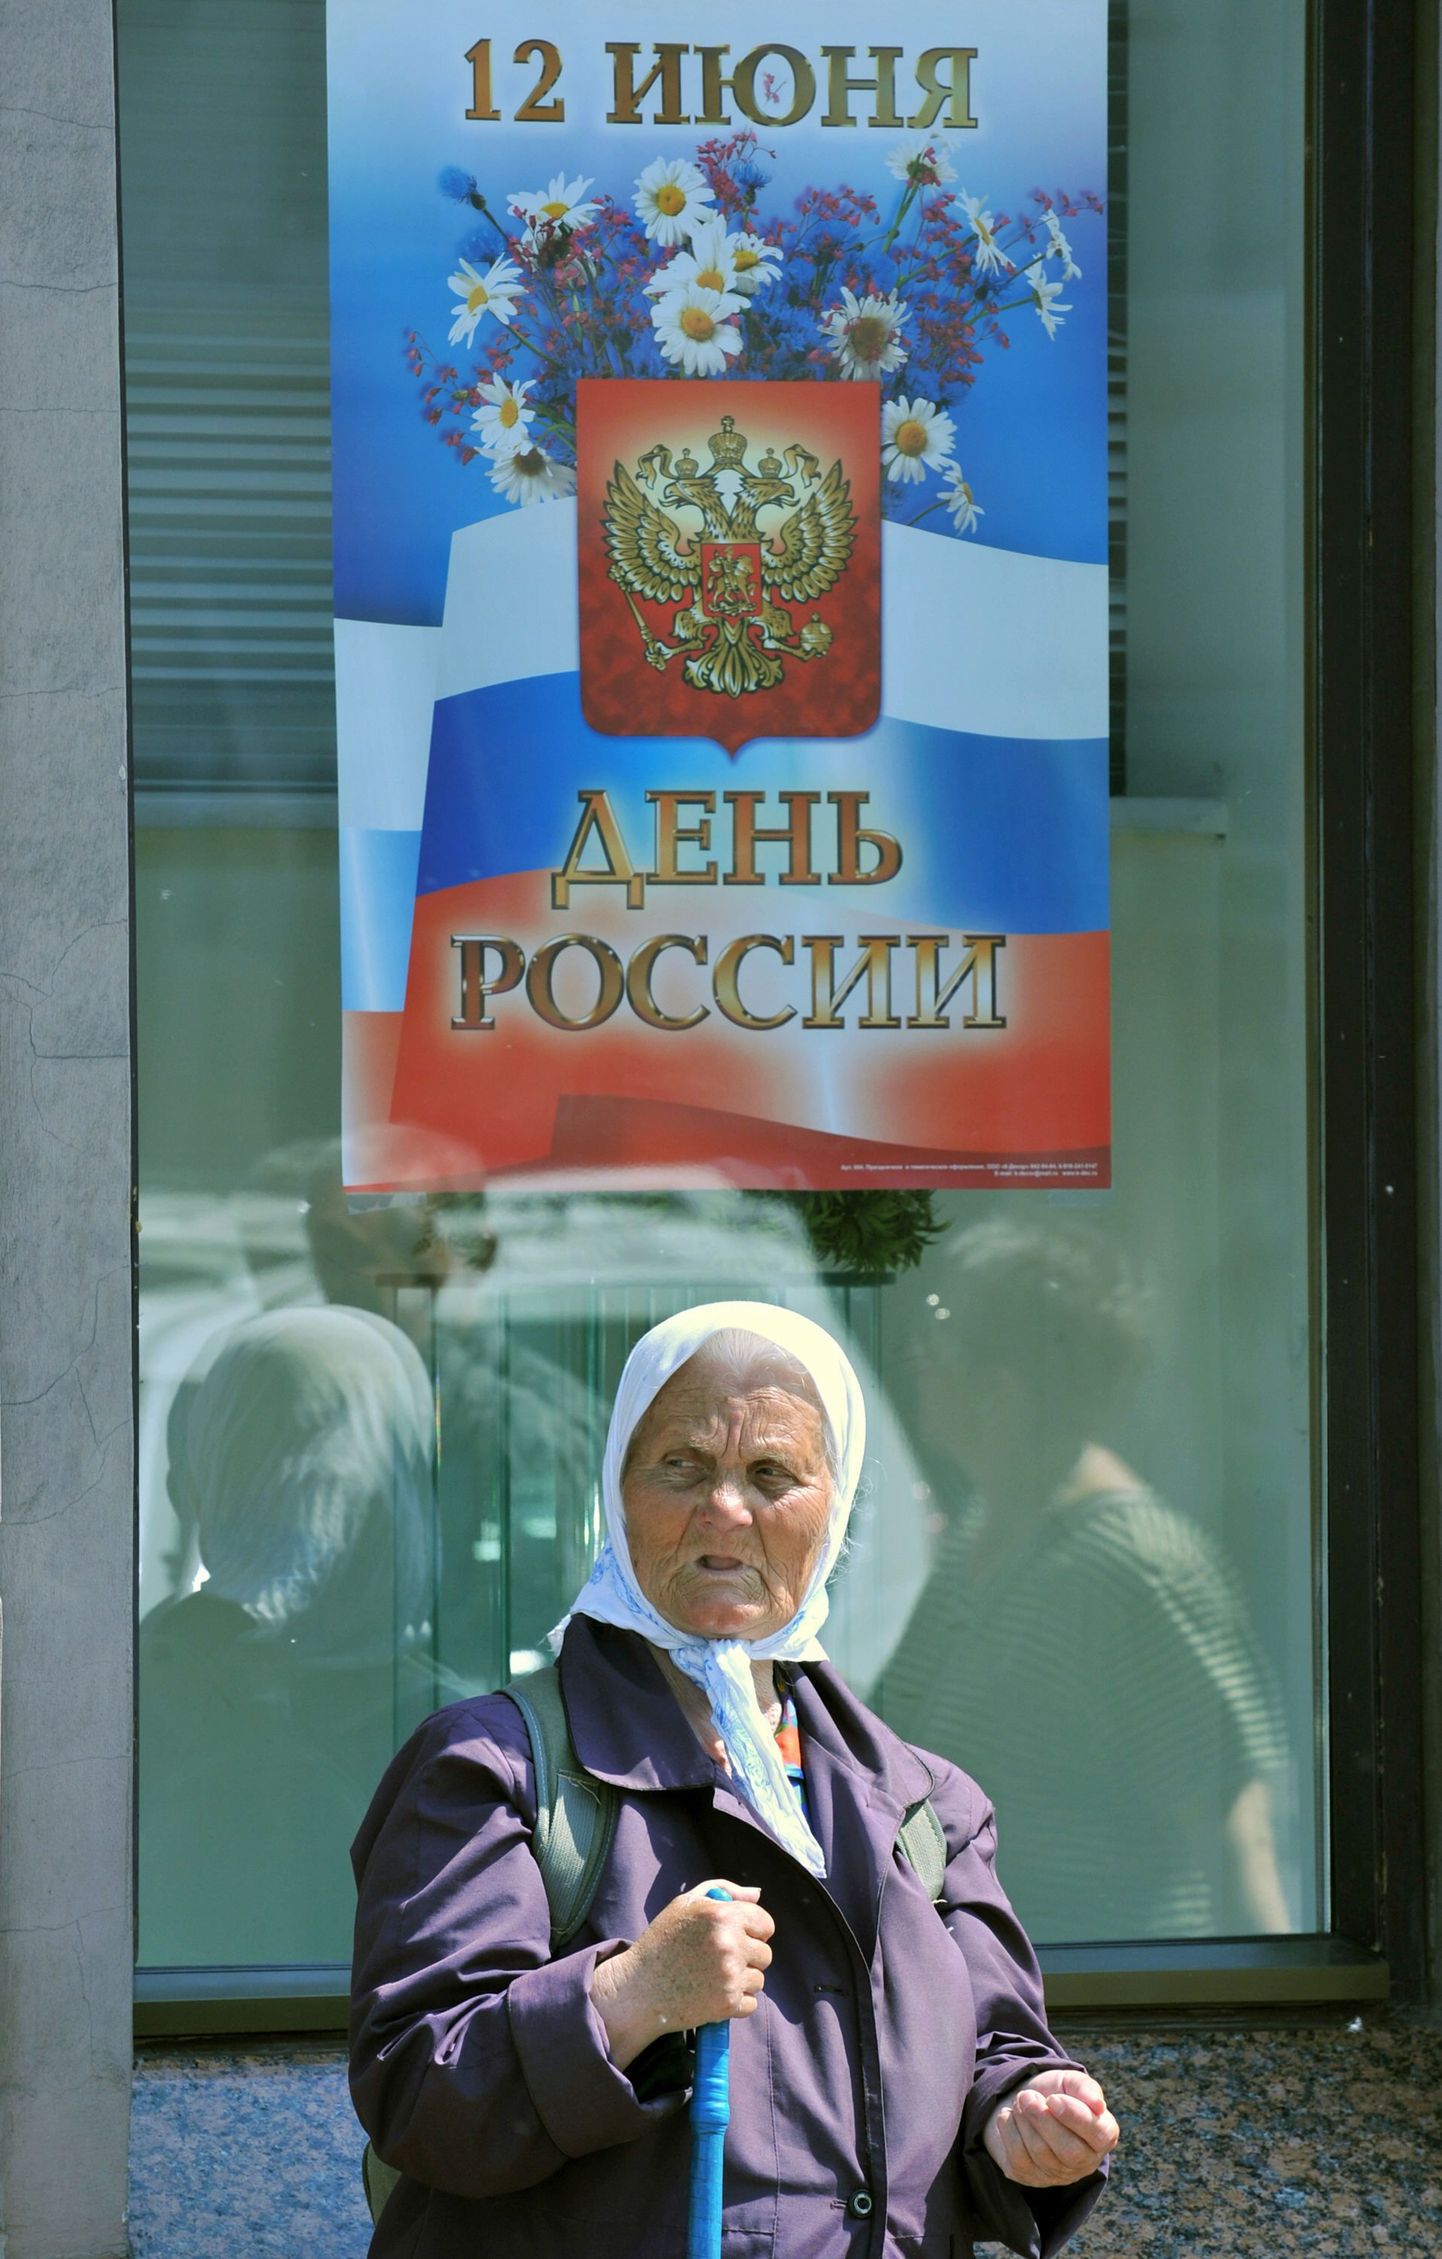 12 июня отмечается День России.